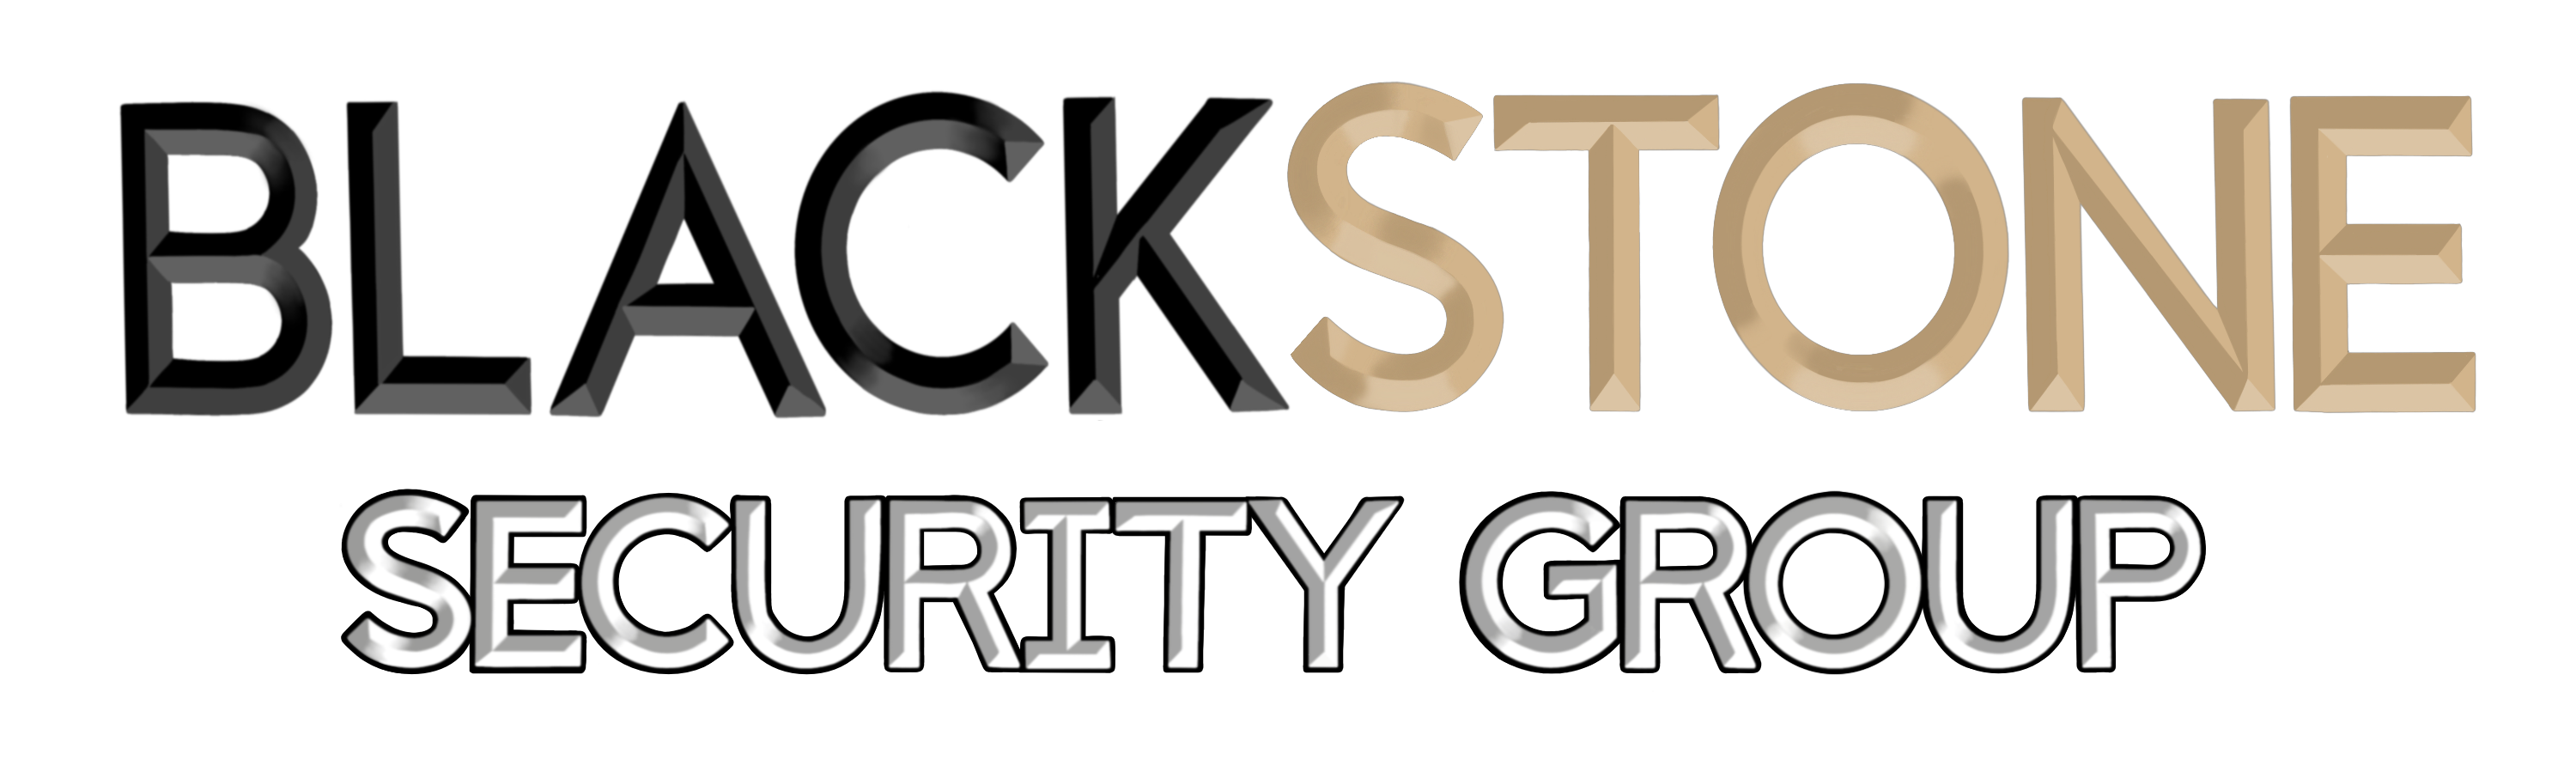 Blackstone Security Group